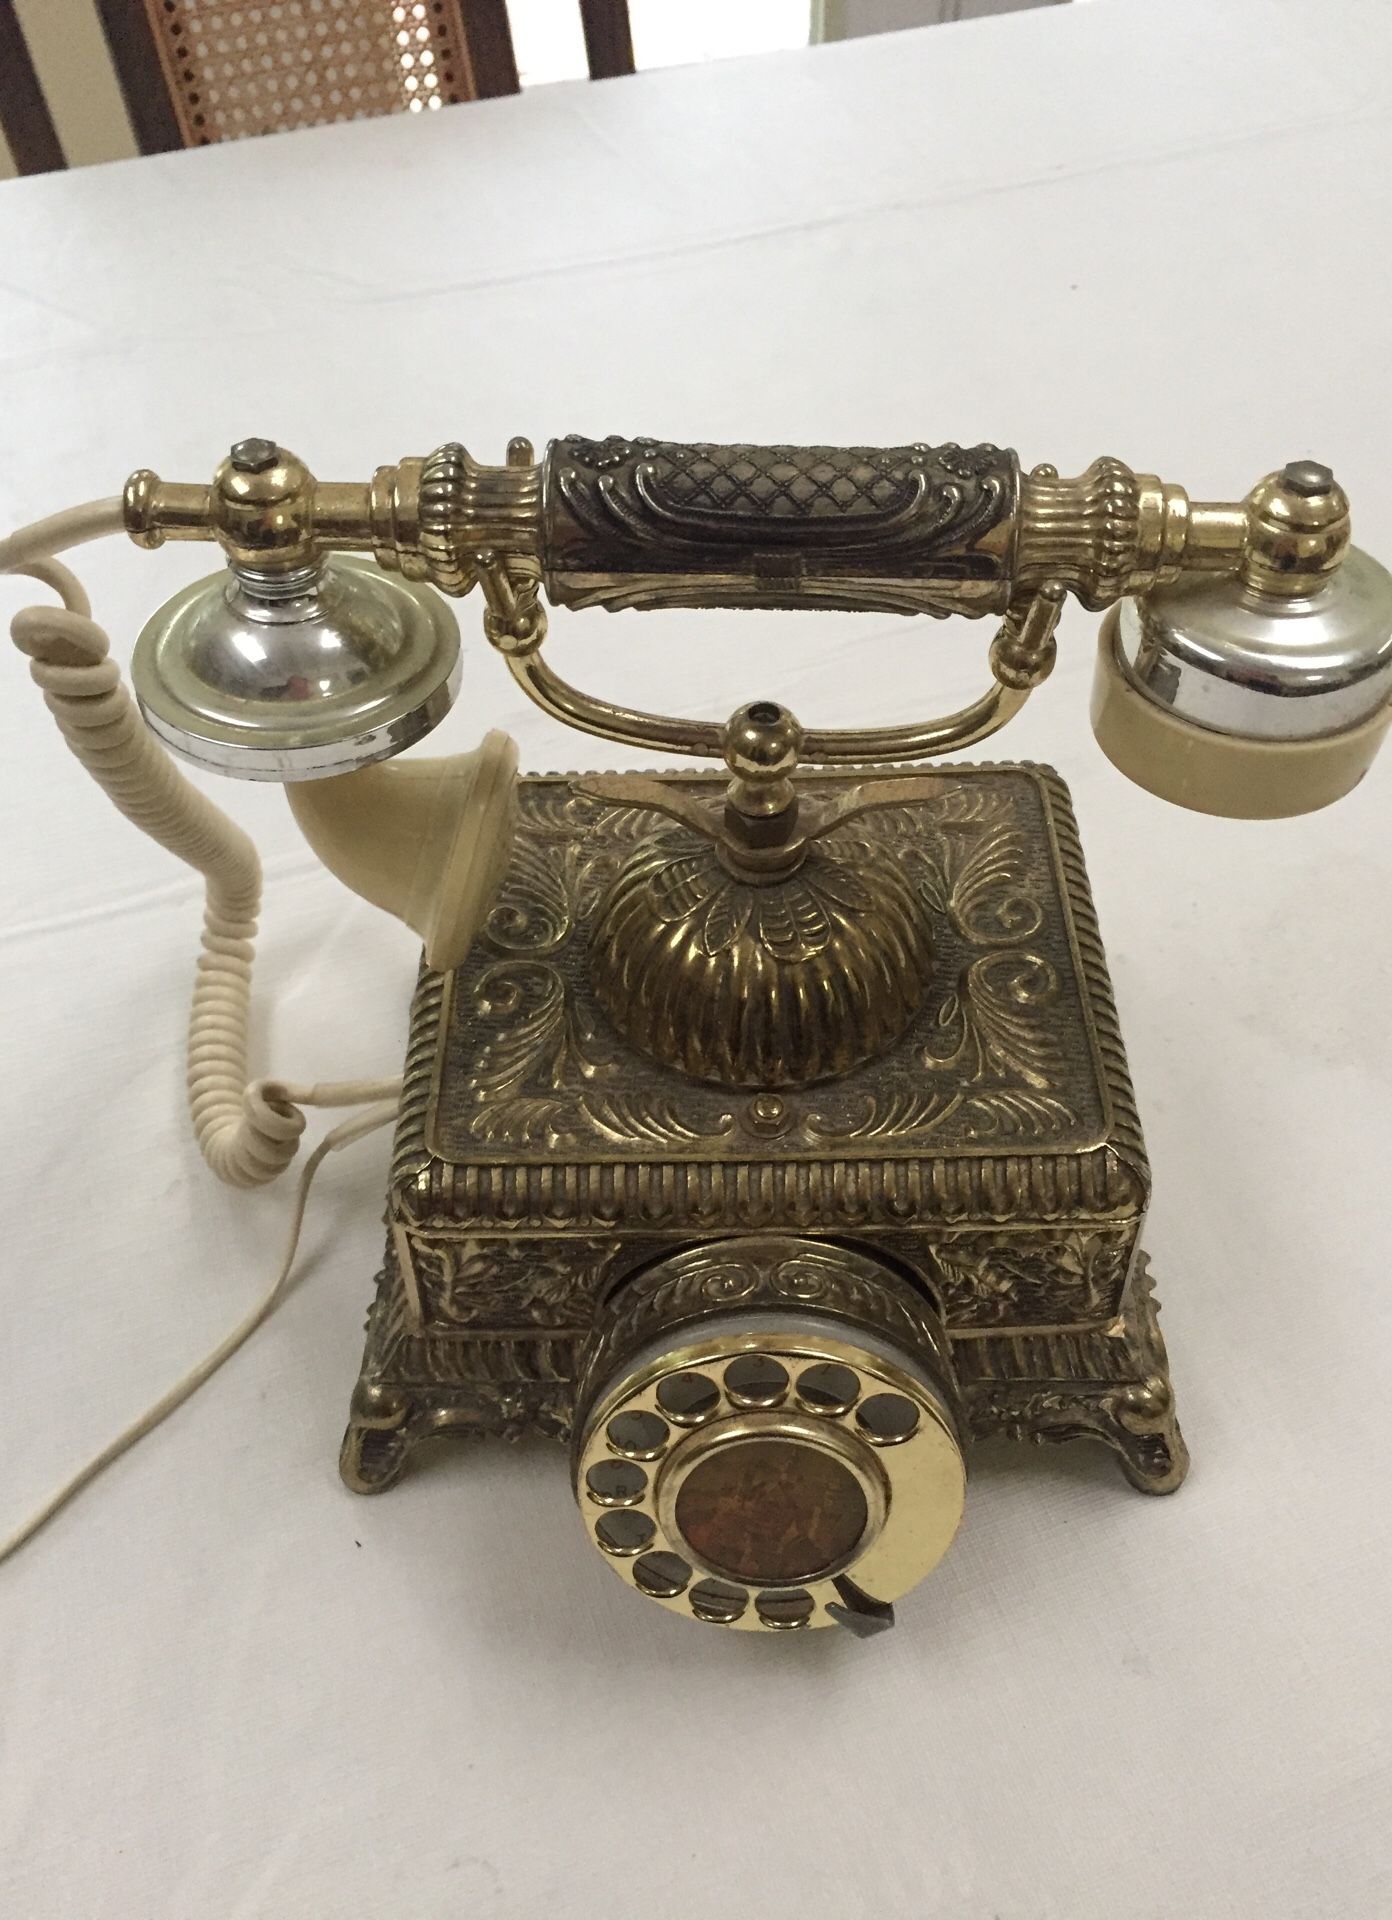 Ornate replica antique phone